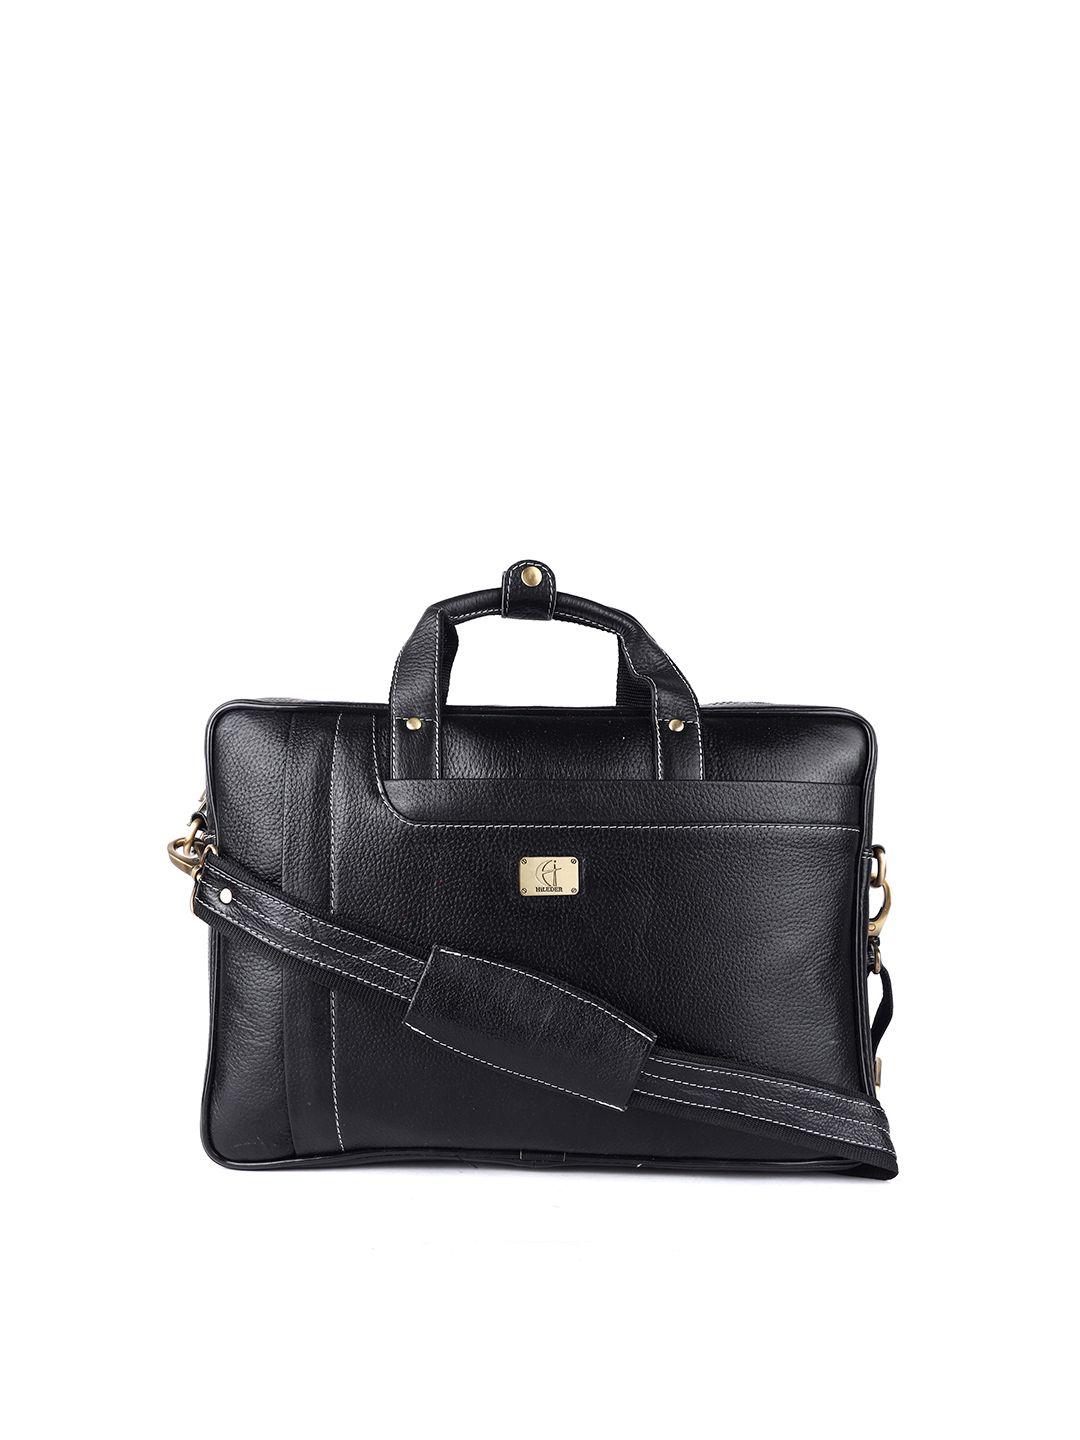 hileder women black leather laptop bag